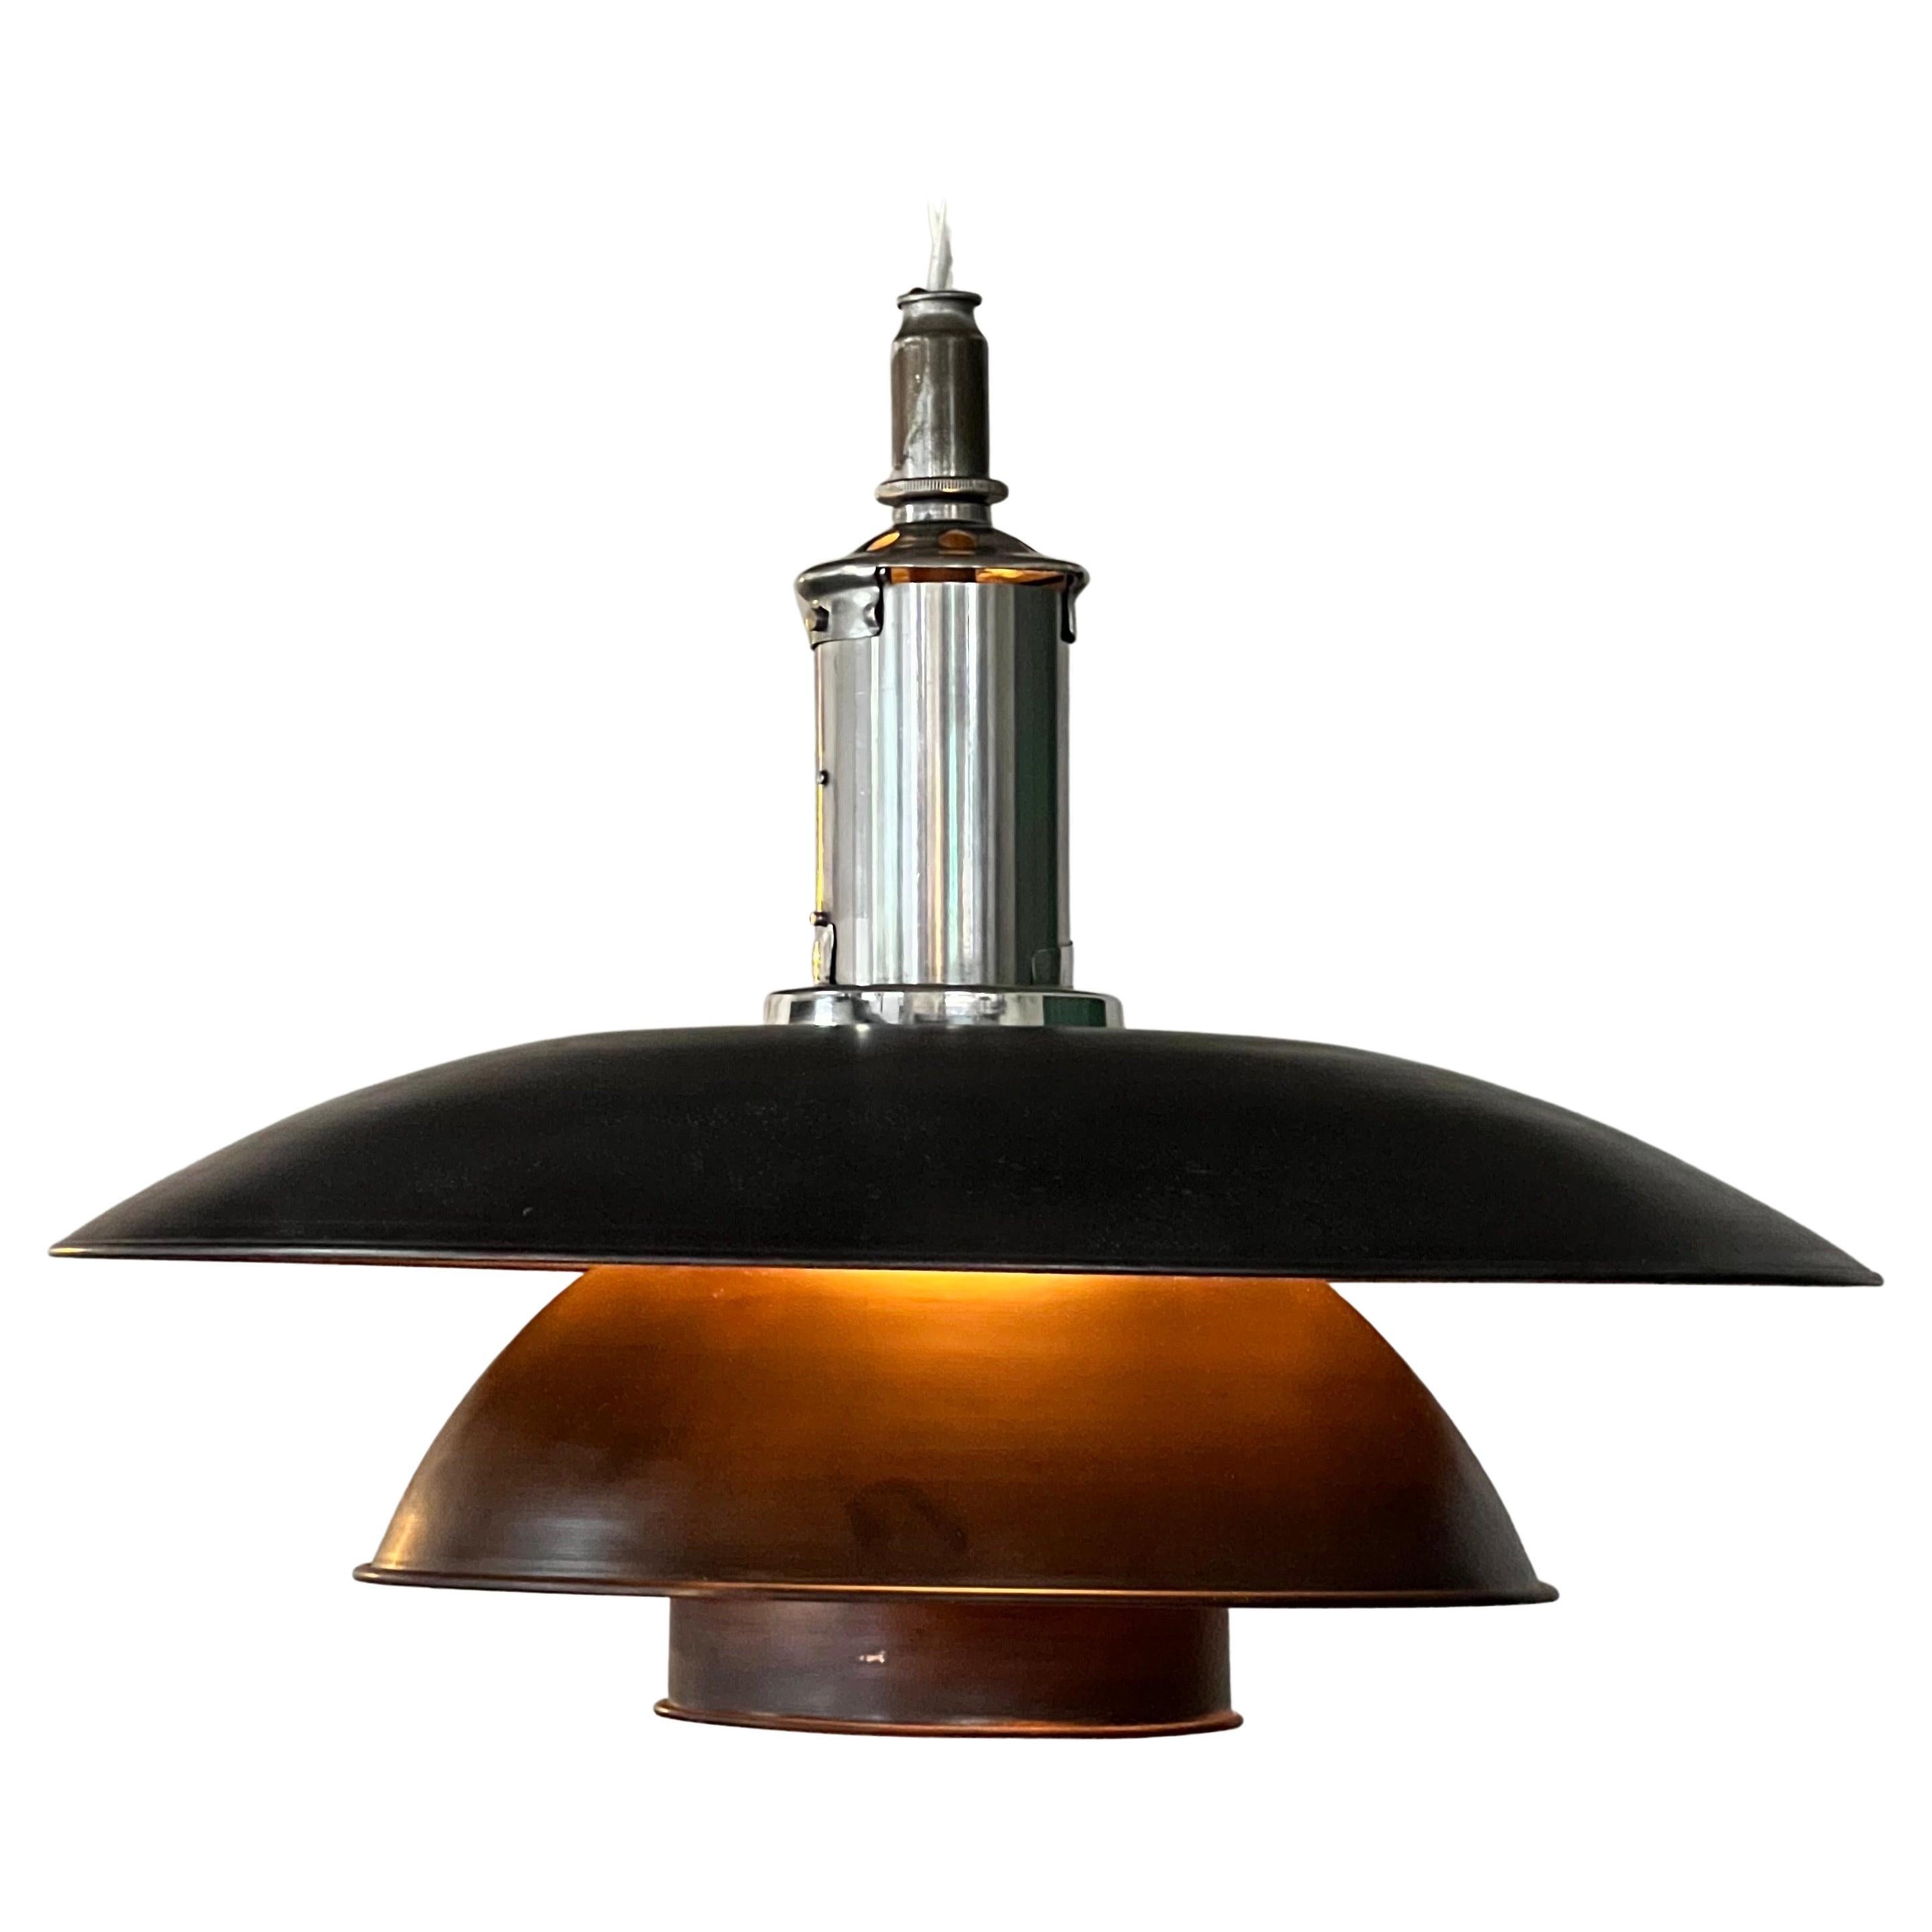 Spektakuläre Hängelampe aus Kupfer und Messing, hergestellt in den 1930er Jahren in der berühmten Louis Poulsen Fabrik. Die Lampe besteht aus mehreren Teilen, darunter 3 Kupferschirme. Leicht zu behebender Einbau. Die Lampe bleibt in ausgezeichnetem